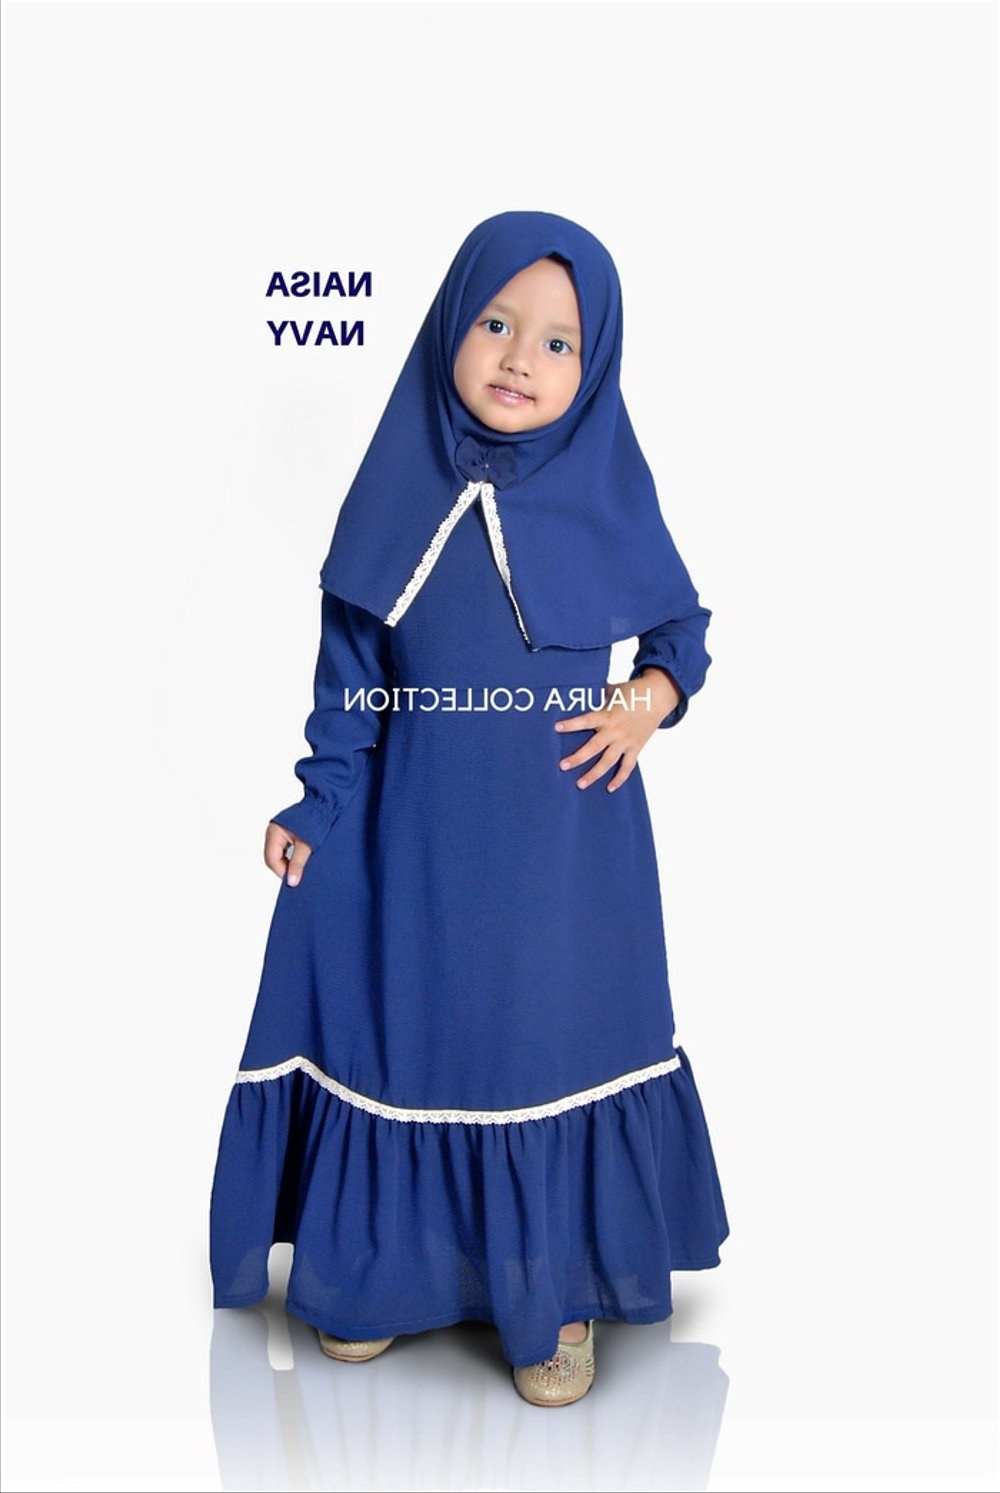 Bentuk Baju Gamis Pernikahan Muslimah 9fdy Bayi